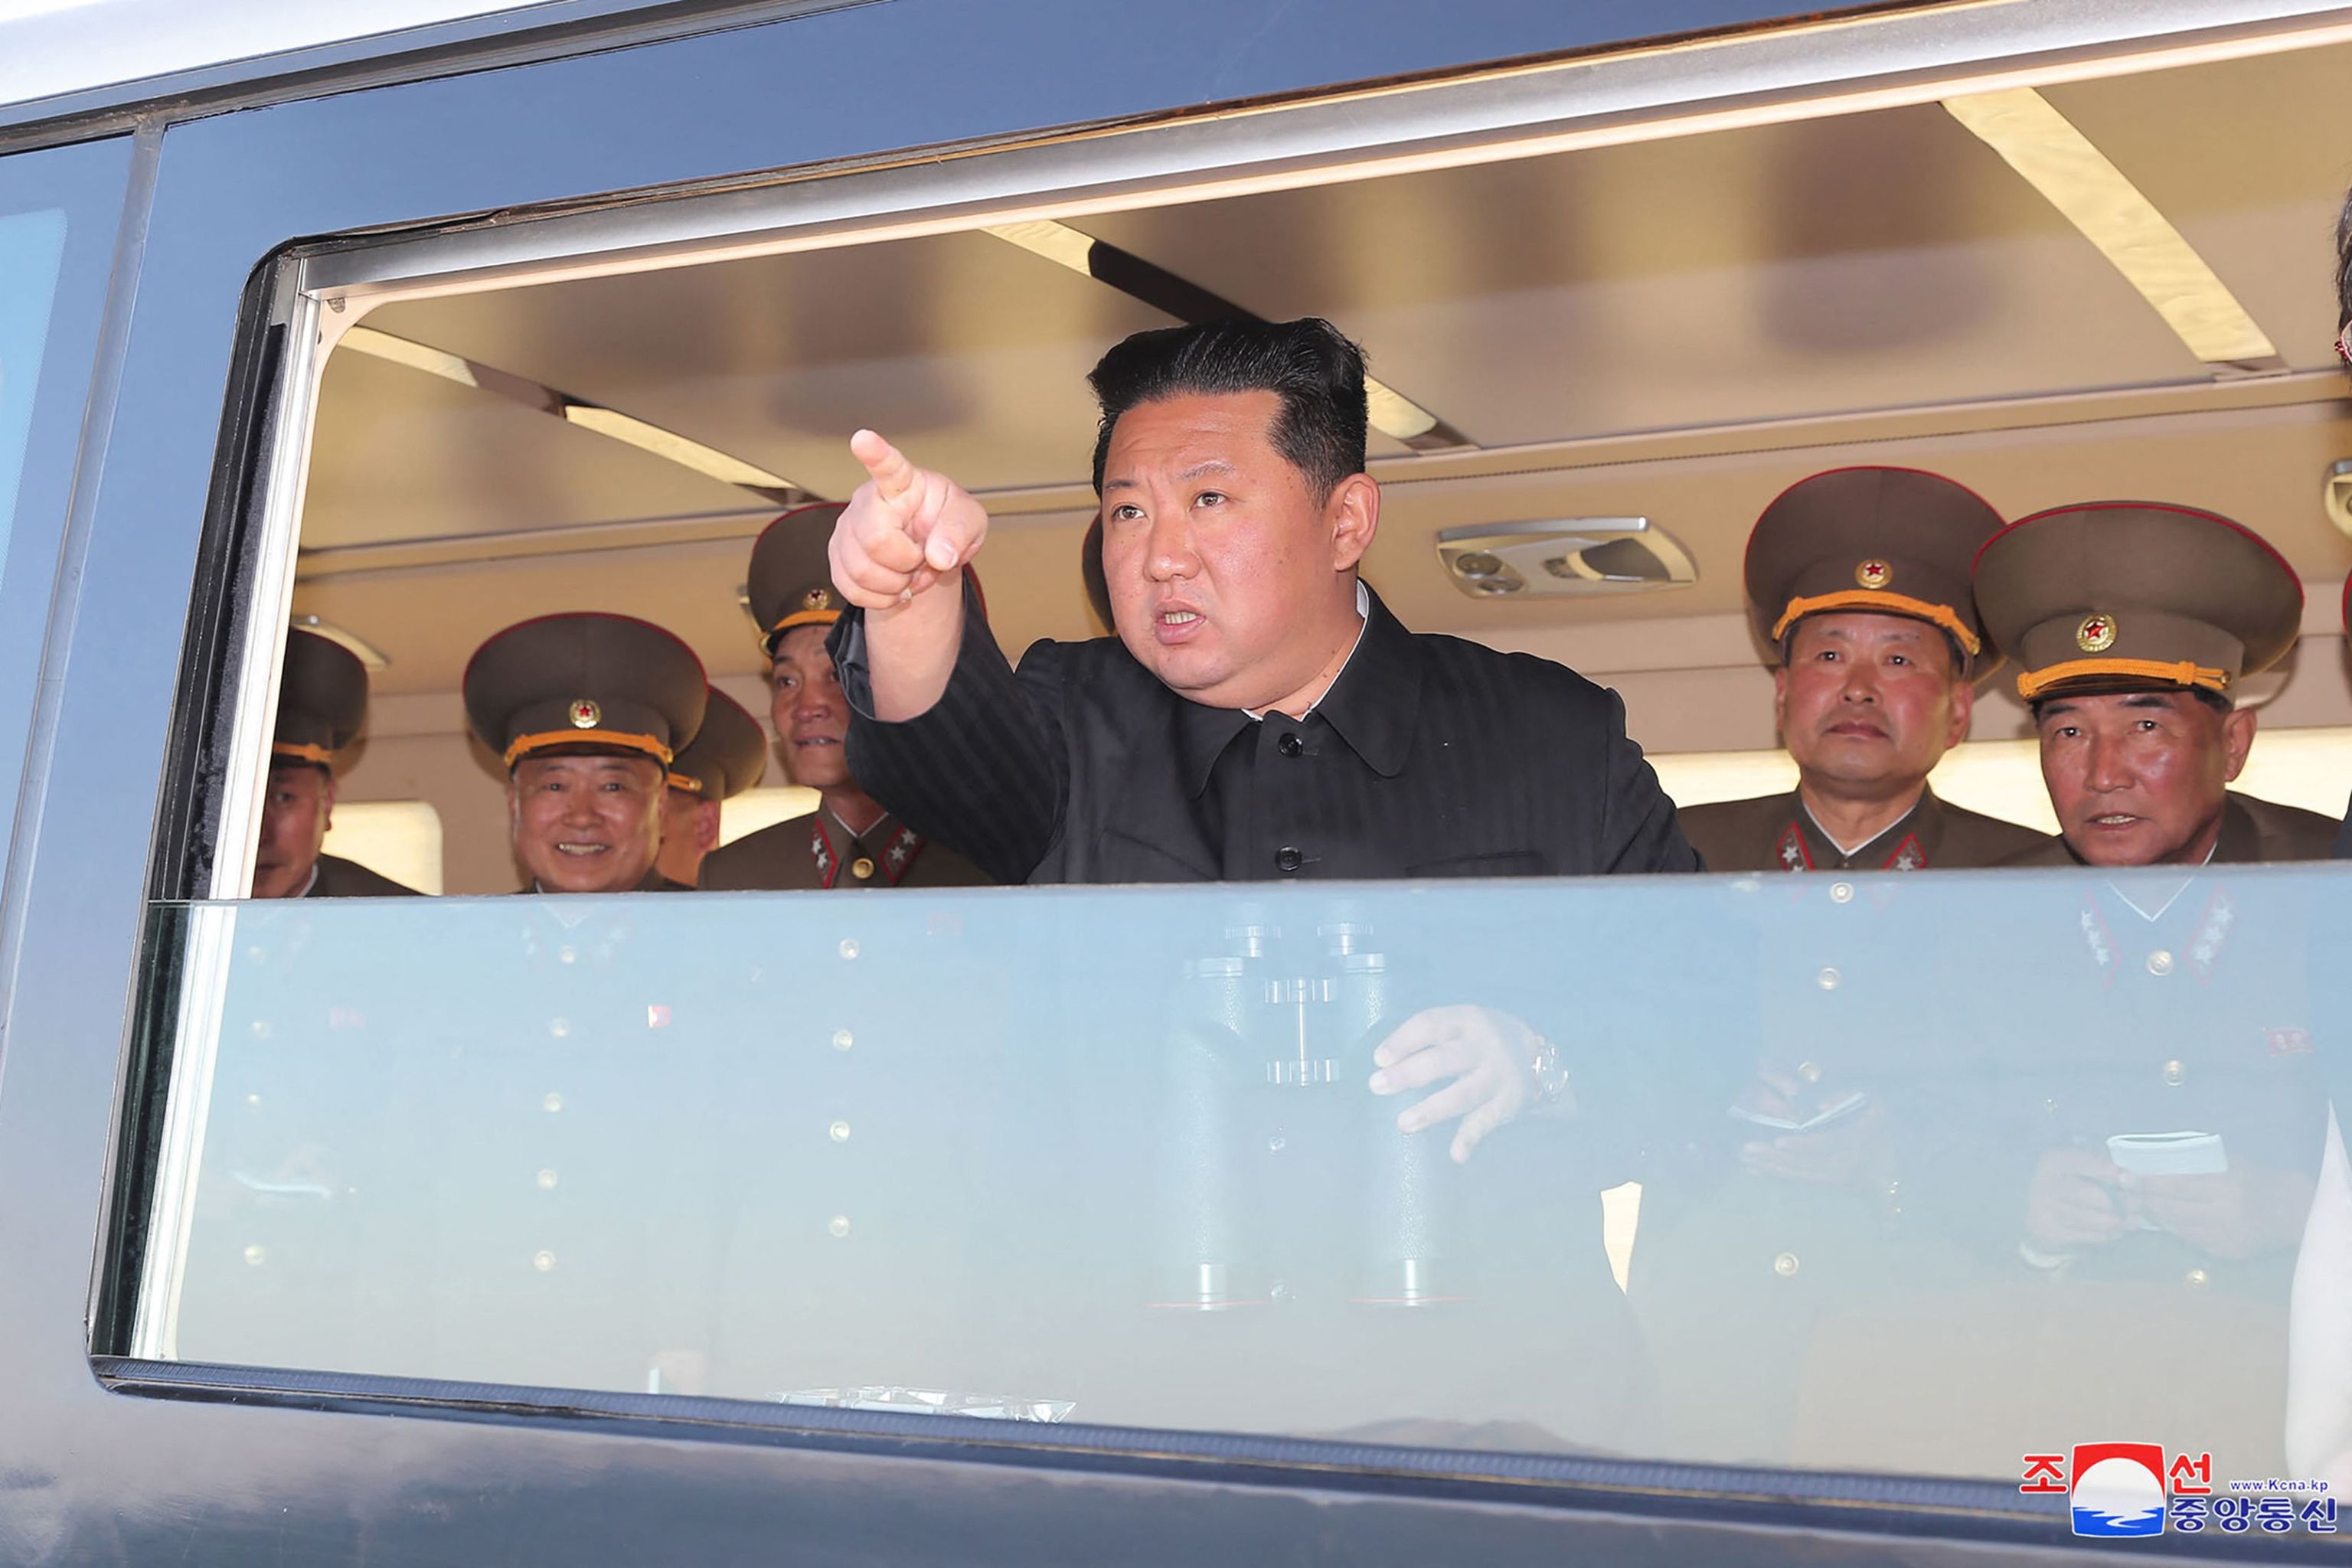 Kim Jong-un anuncia que ampliará poder nuclear de Corea del Norte «a la mayor velocidad»